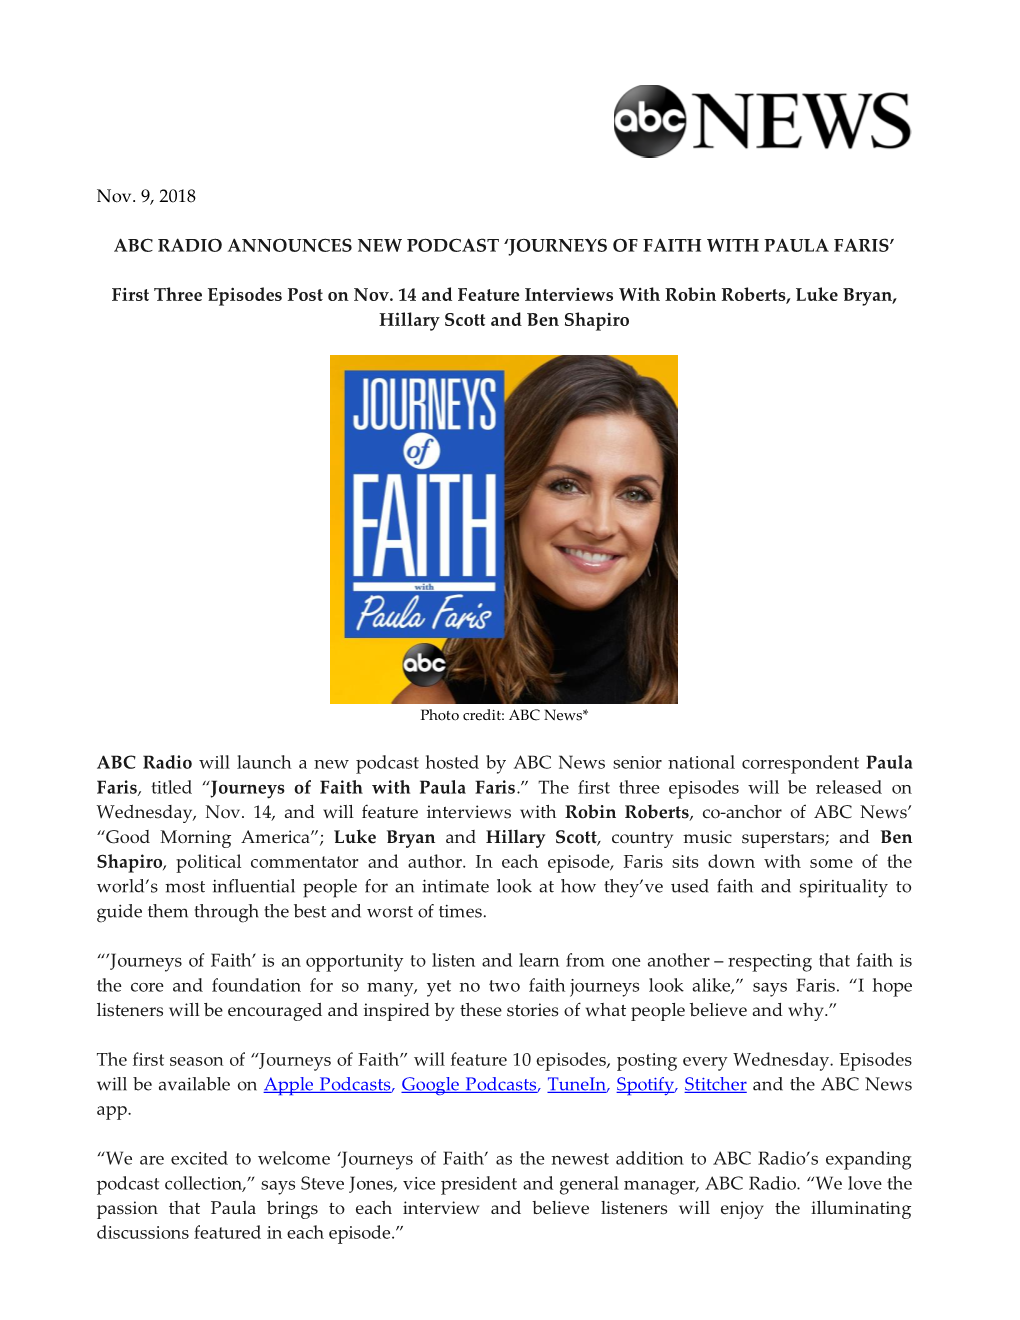 Journeys of Faith with Paula Faris’